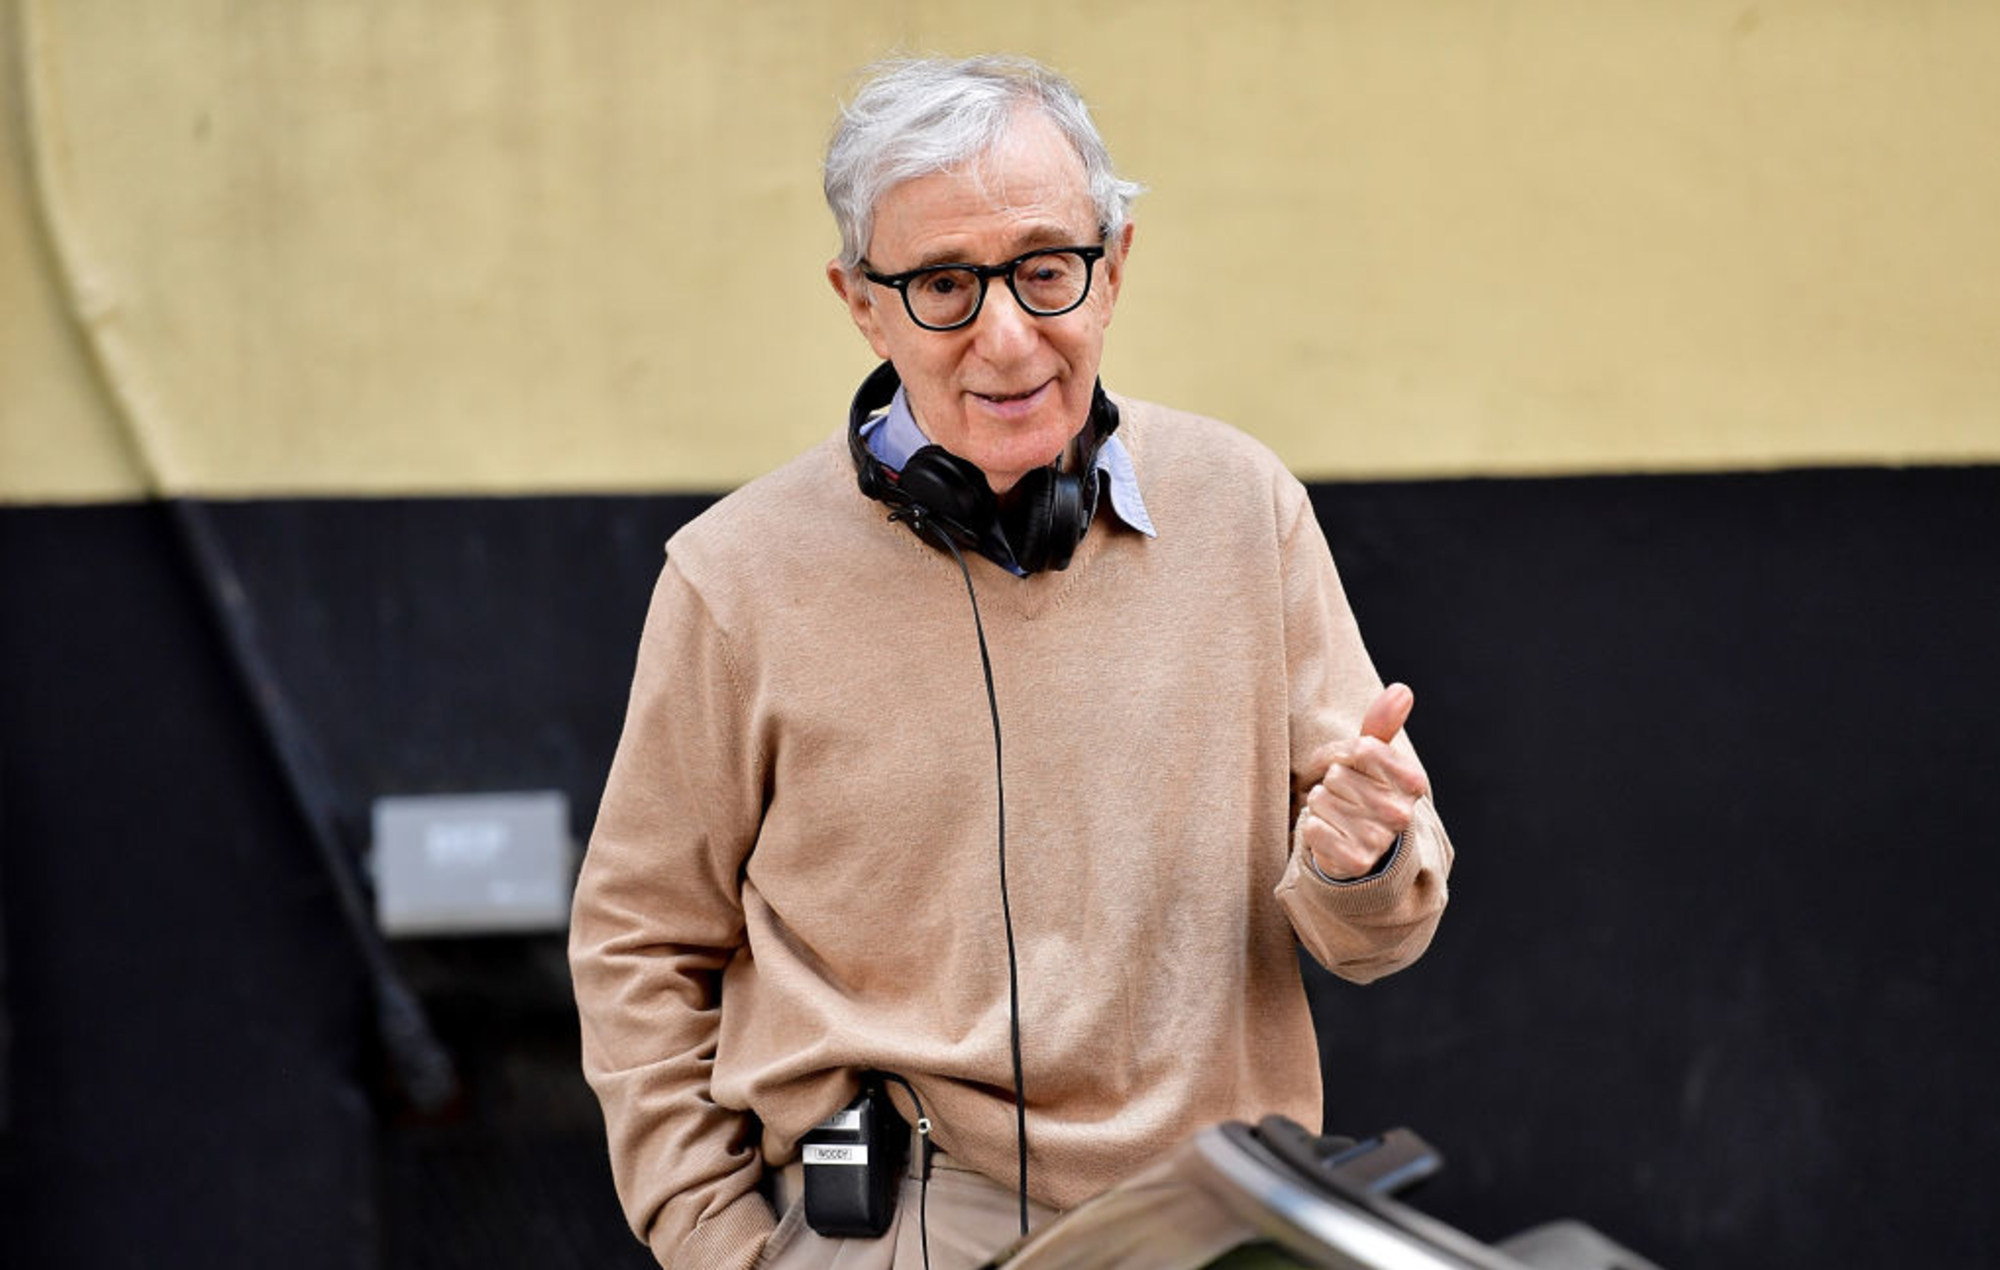 La próxima película de Woody Allen puede ser la última: "Se acabó la emoción"